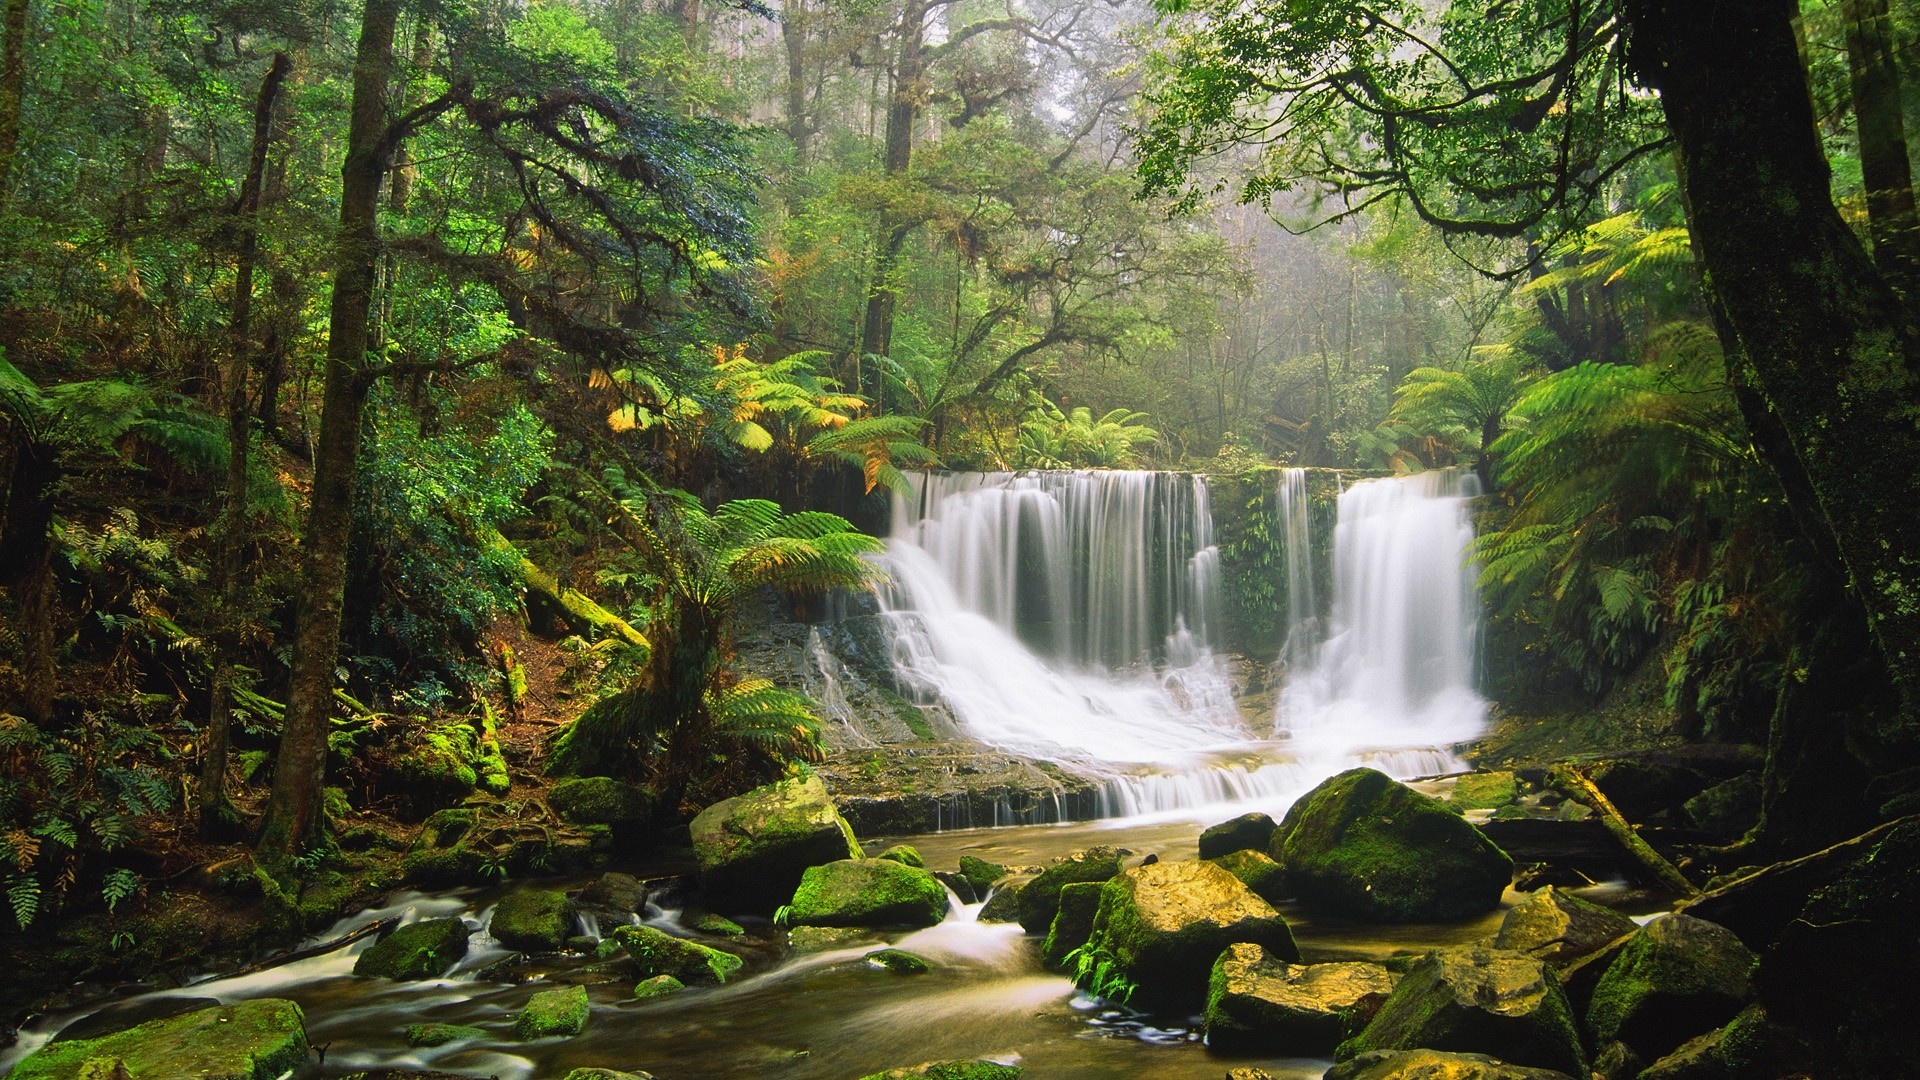 Waterfall, Rocks, Moss Green Forest Tree Fern Australian Rainforest